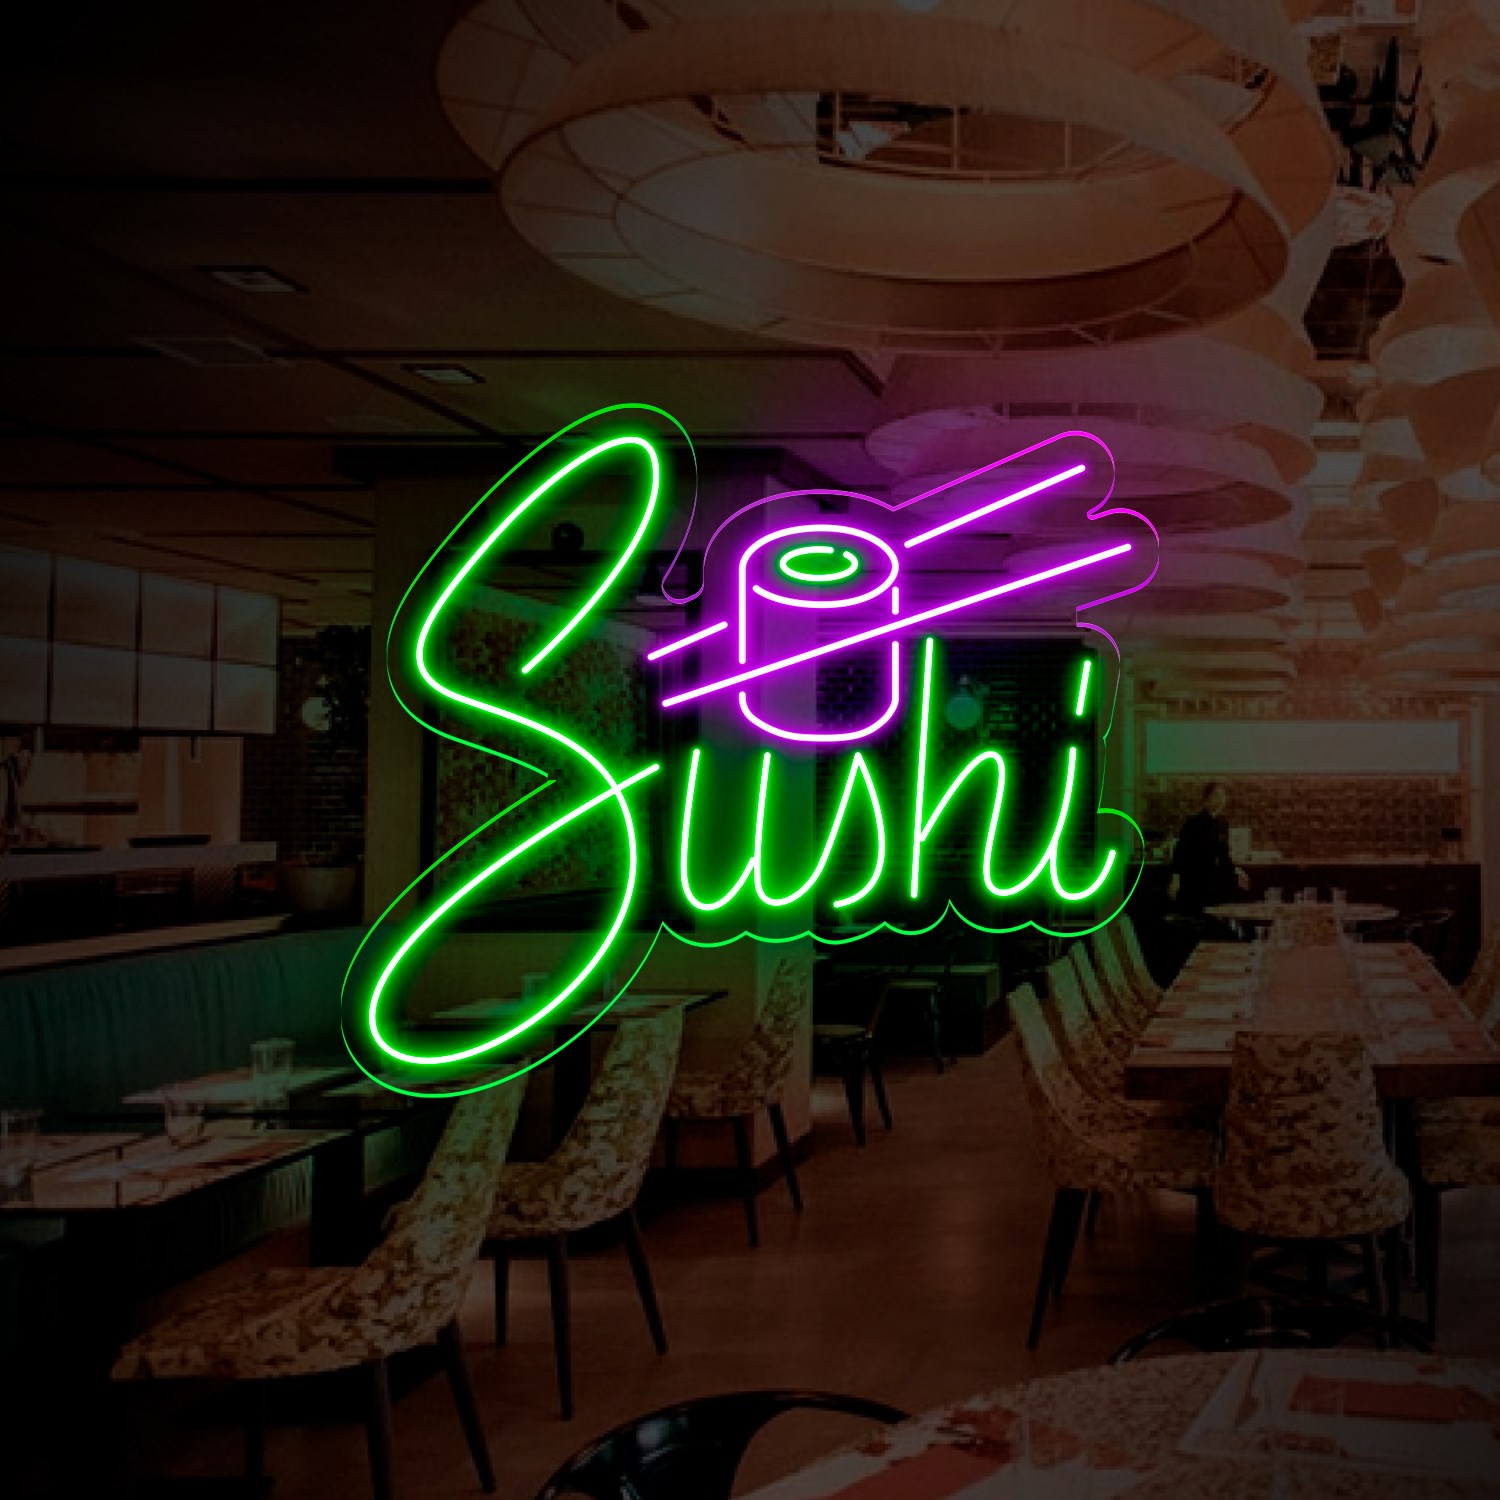 Bild von Neon für Restaurant "Sushi"